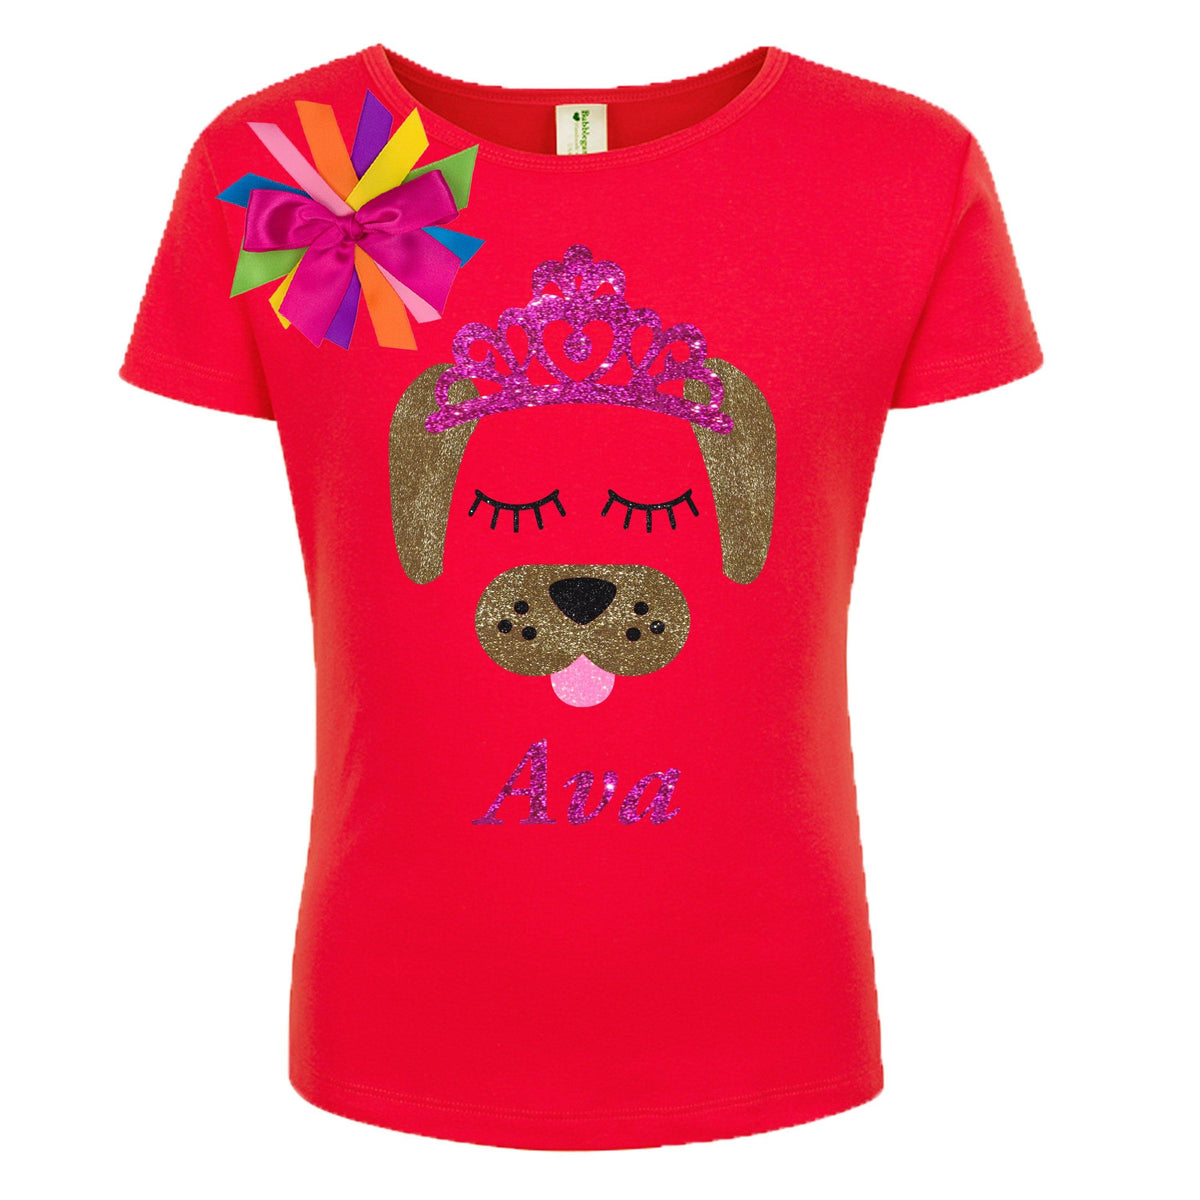 Puppy Dog Shirt - Pink Tiara - Shirt - Bubblegum Divas Store